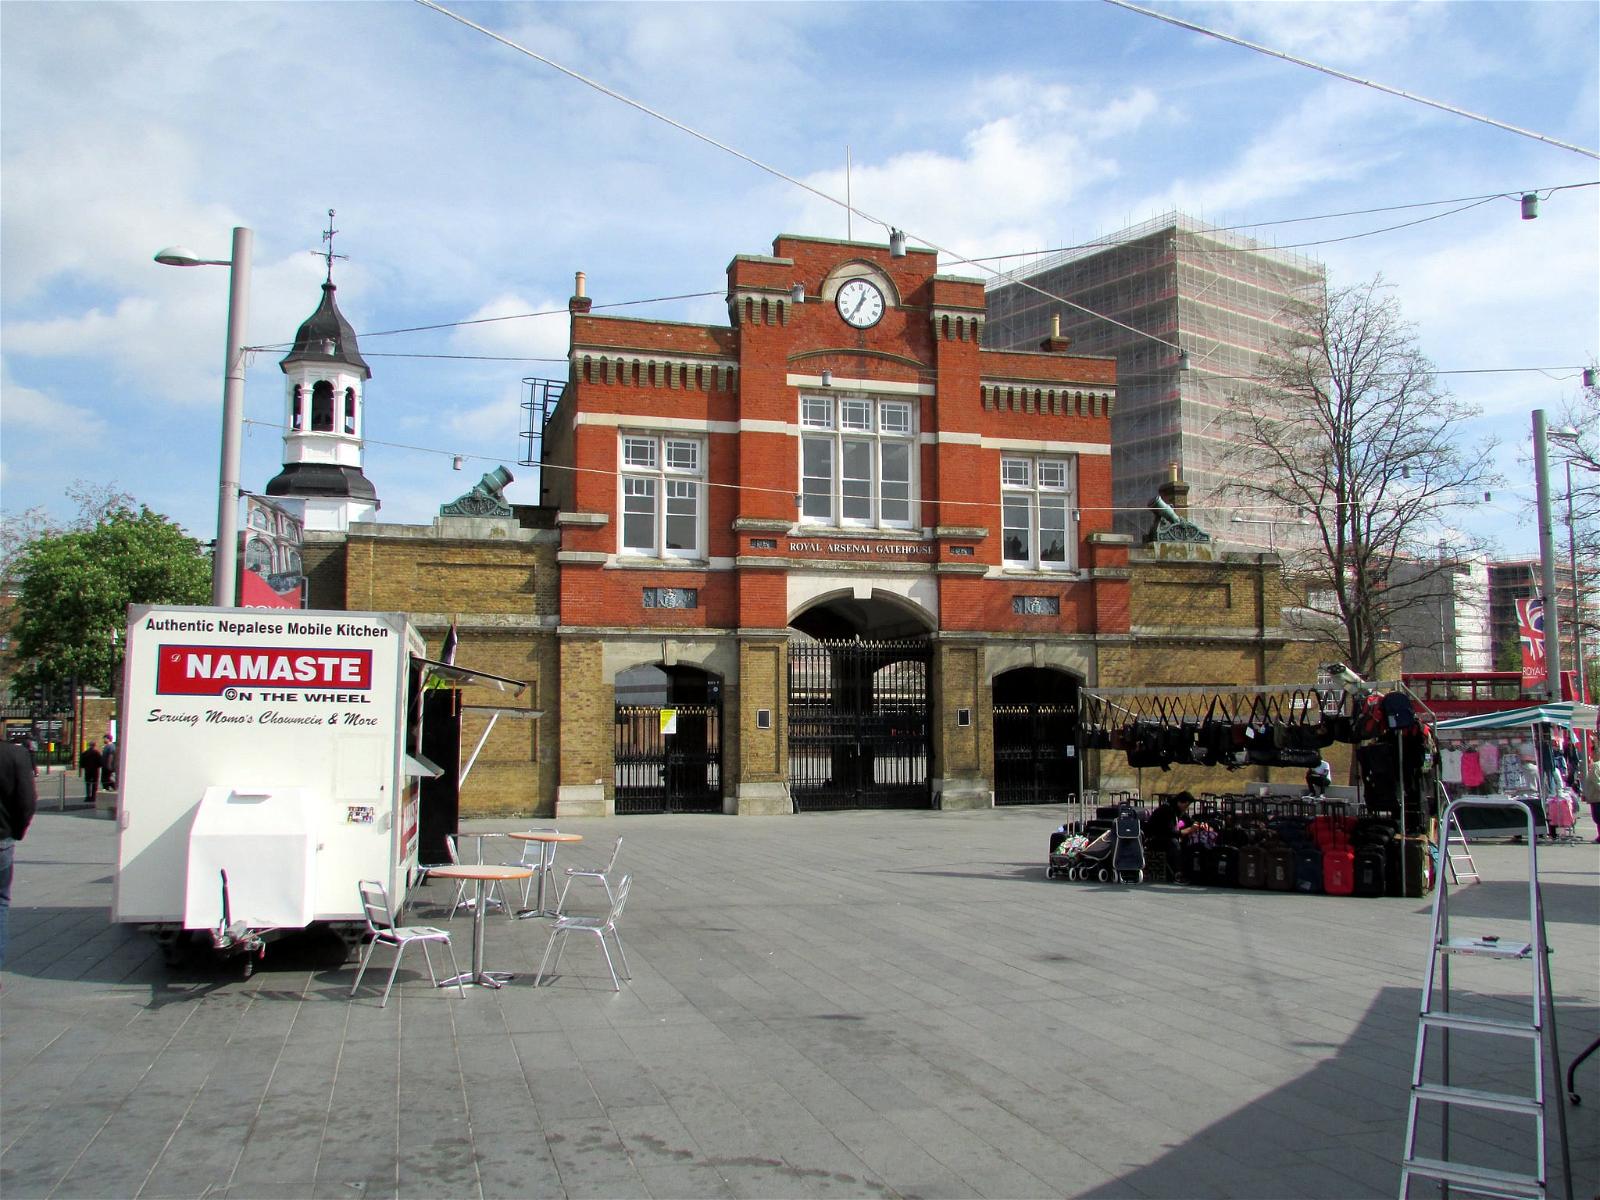 Image de Royal Arsenal Gatehouse. london woolwich